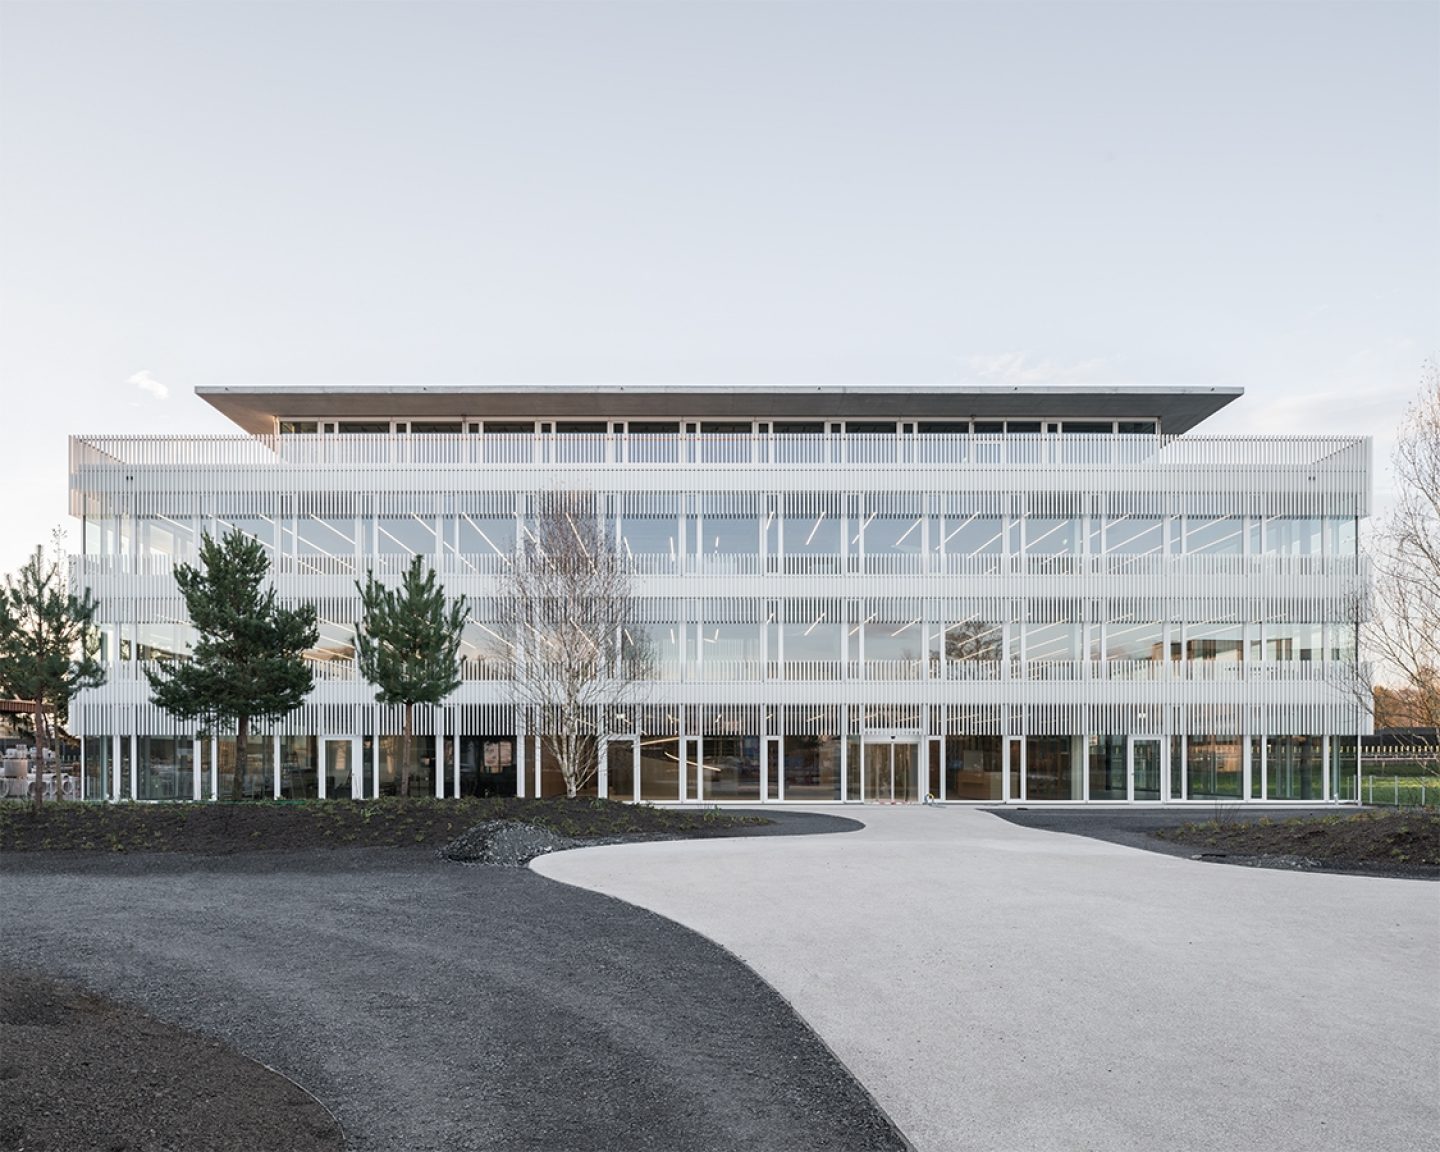 Hapimag Hauptsitz, Steinhausen, ZG. Hildebrand Studios AG, Büro für Architektur und Städtebau, Zürich